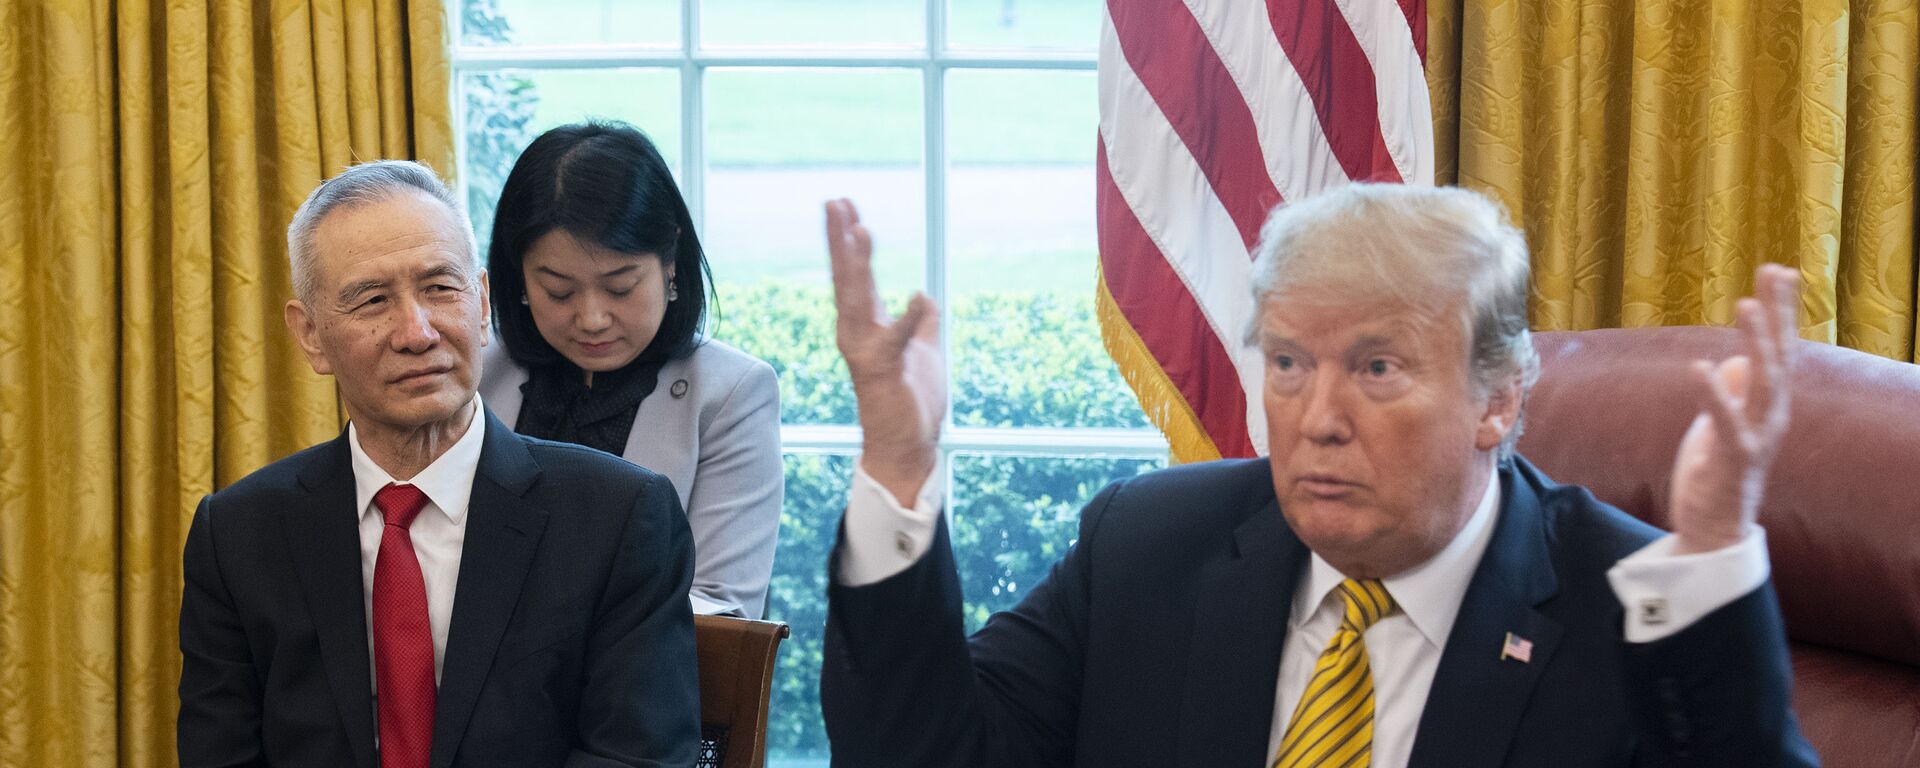 Tổng thống Mỹ Donald Trump tiếp Phó thủ tướng Trung Quốc Lưu Hạc tại Washington, năm 2019 - Sputnik Việt Nam, 1920, 04.07.2019